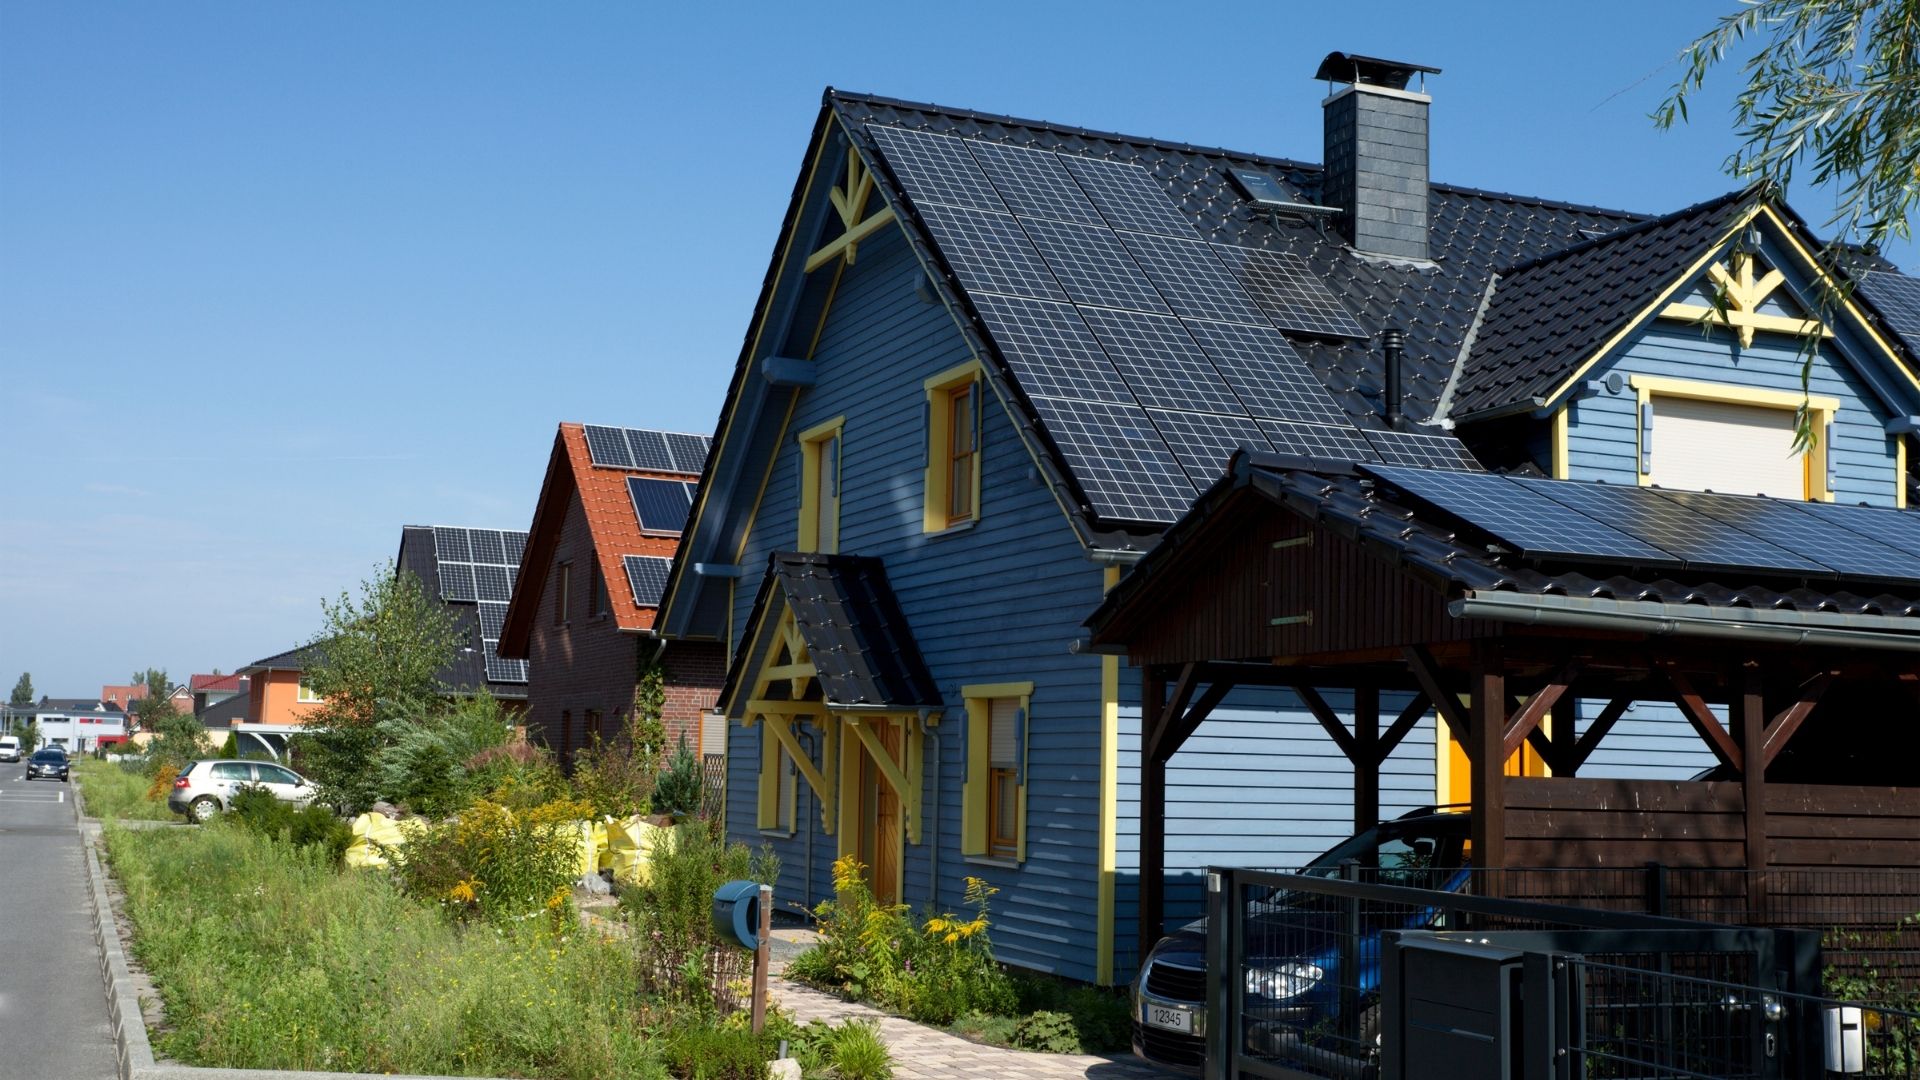 panneau solaire une solution ecologique pour une production d energie renouvelable.jpeg